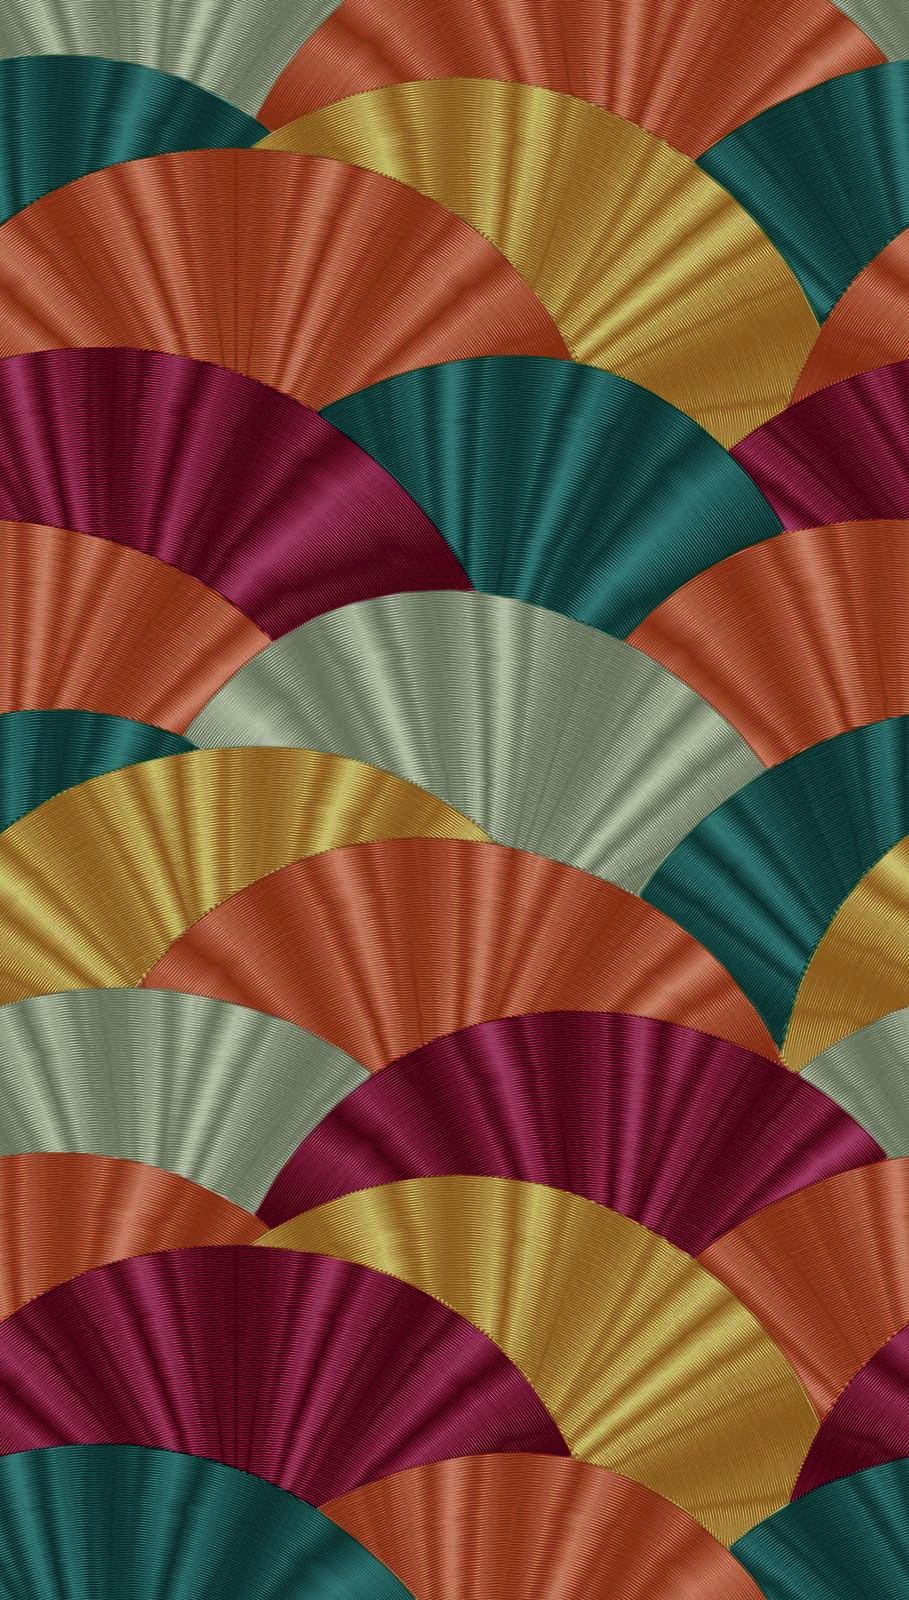             Papier peint intissé coloré avec grands motifs en éventail - multicolore, rouge, turquoise
        